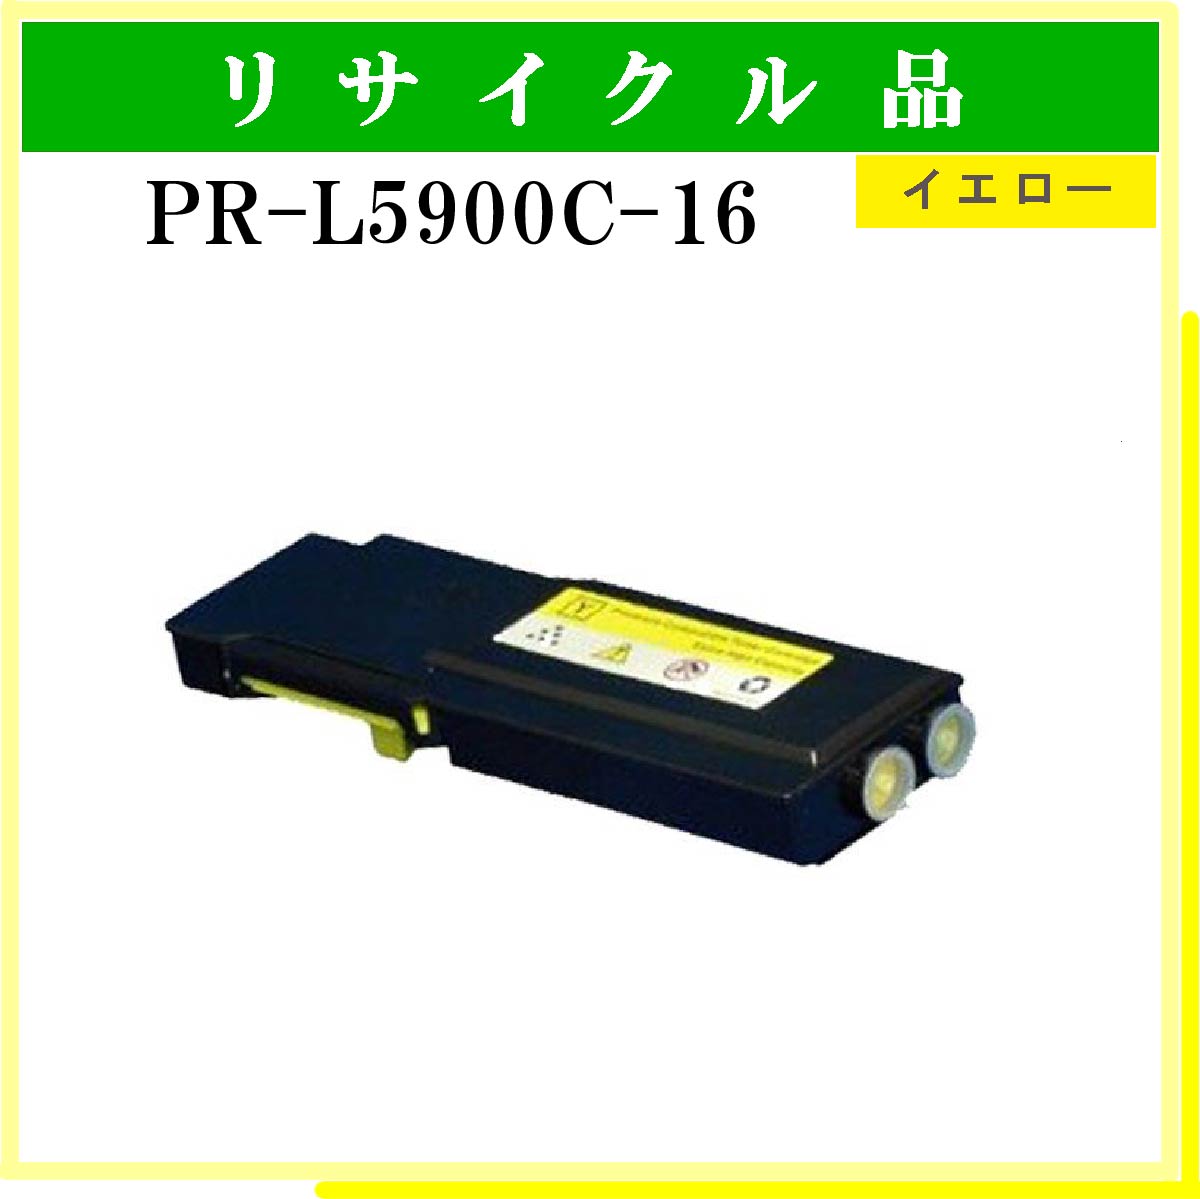 PR-L5900C-16